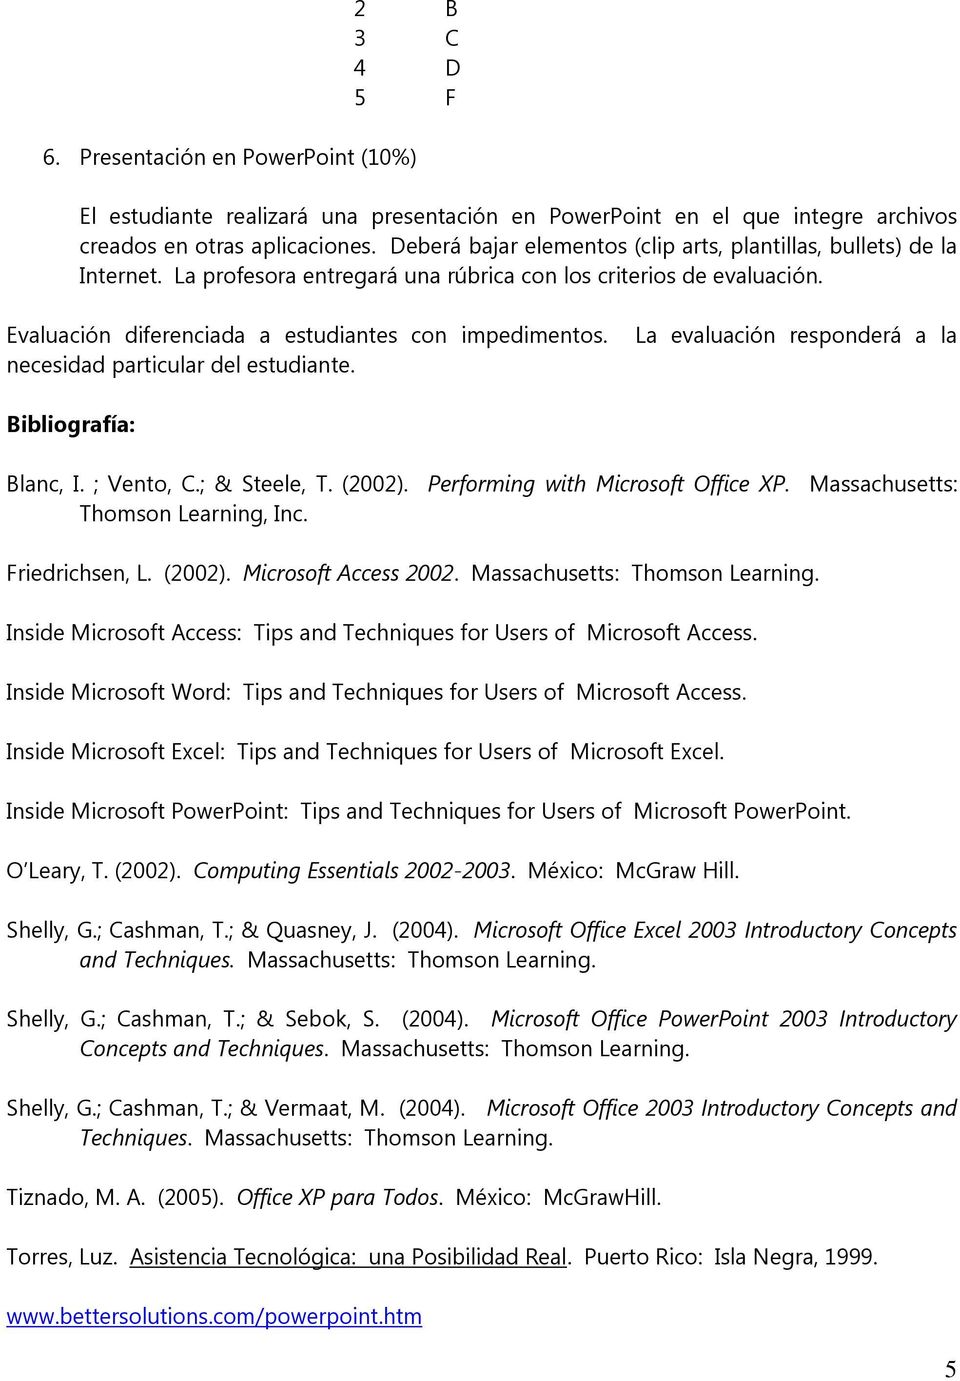 necesidad particular del estudiante. La evaluación responderá a la Bibliografía: Blanc, I. ; Vento, C.; & Steele, T. (2002). Performing with Microsoft Office XP. Massachusetts: Thomson Learning, Inc.